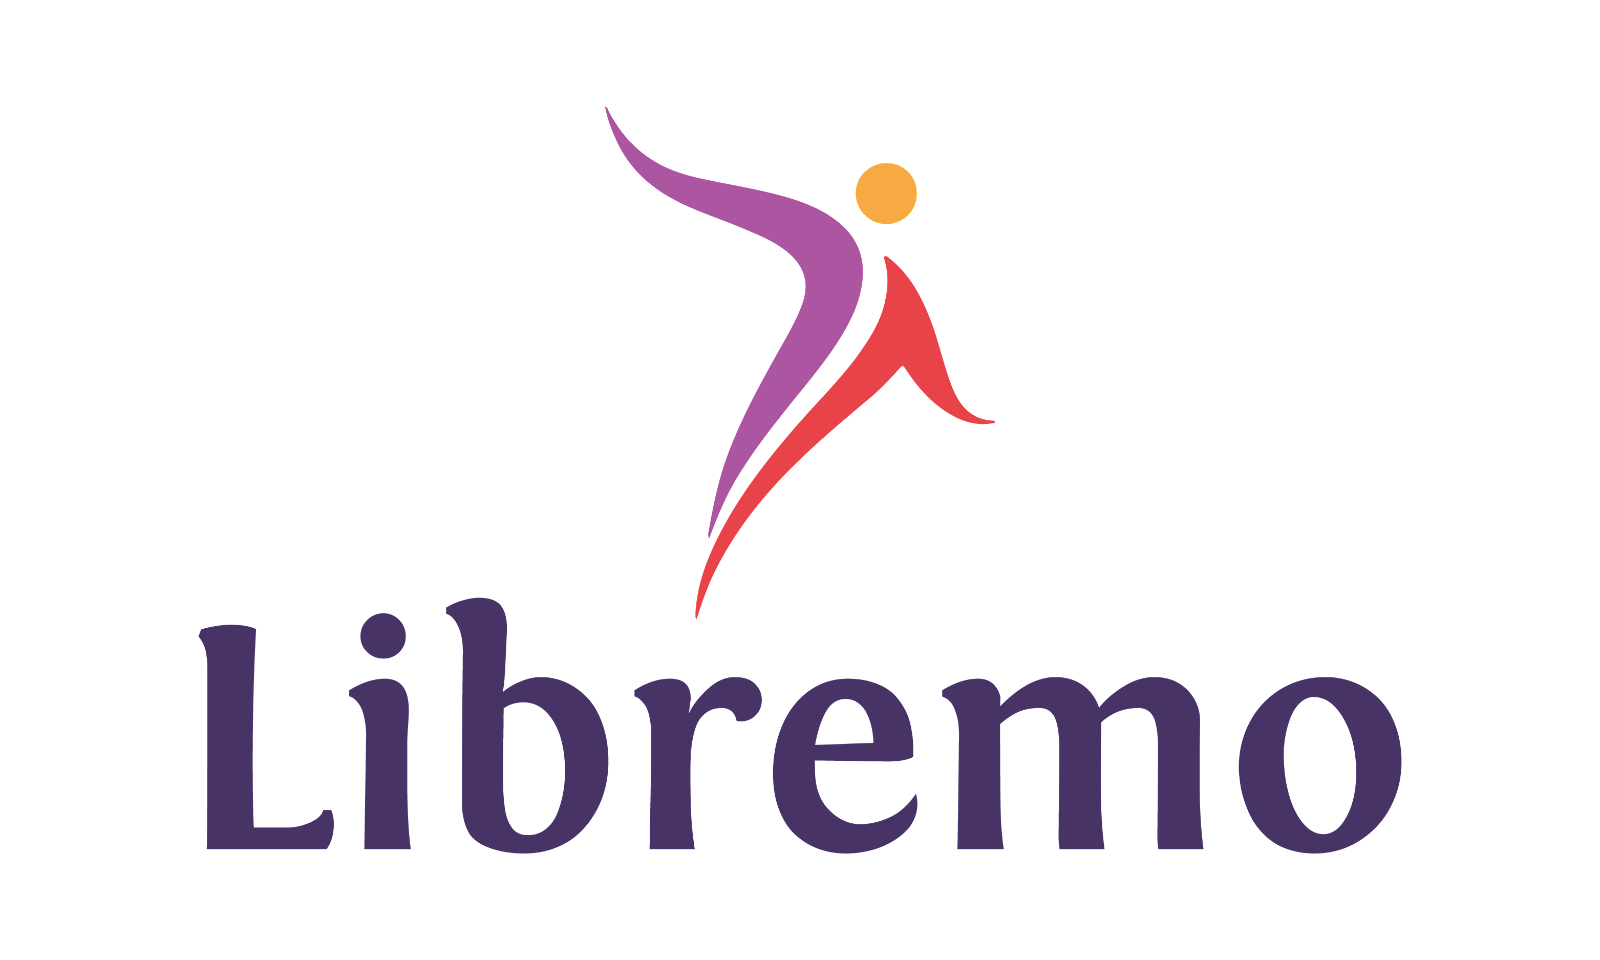 Libremo.com - Creative brandable domain for sale